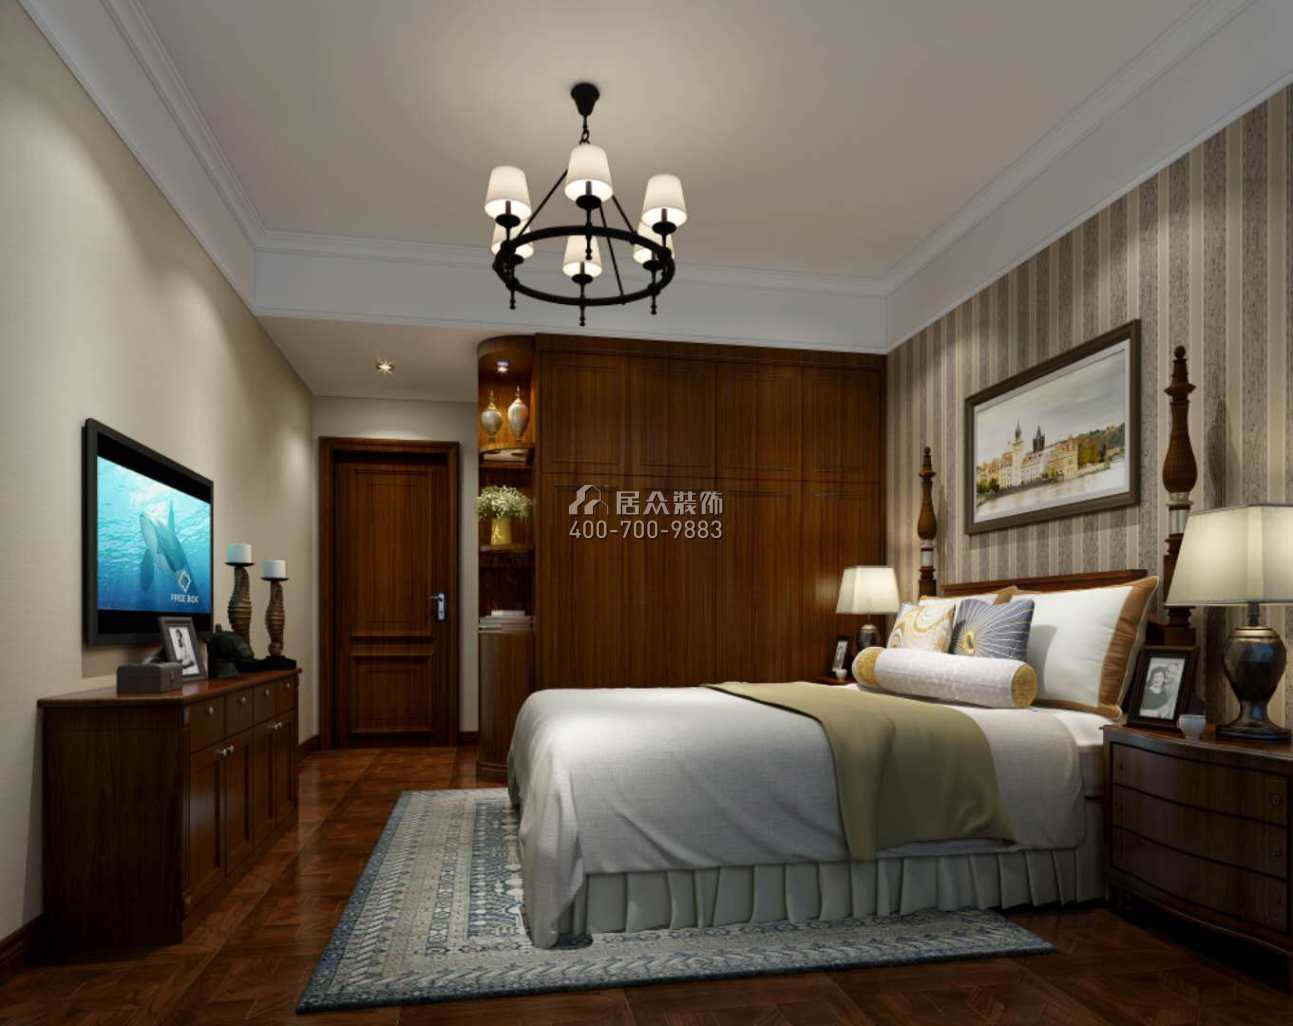 维港半岛150平方米美式风格平层户型卧室开元官网效果图